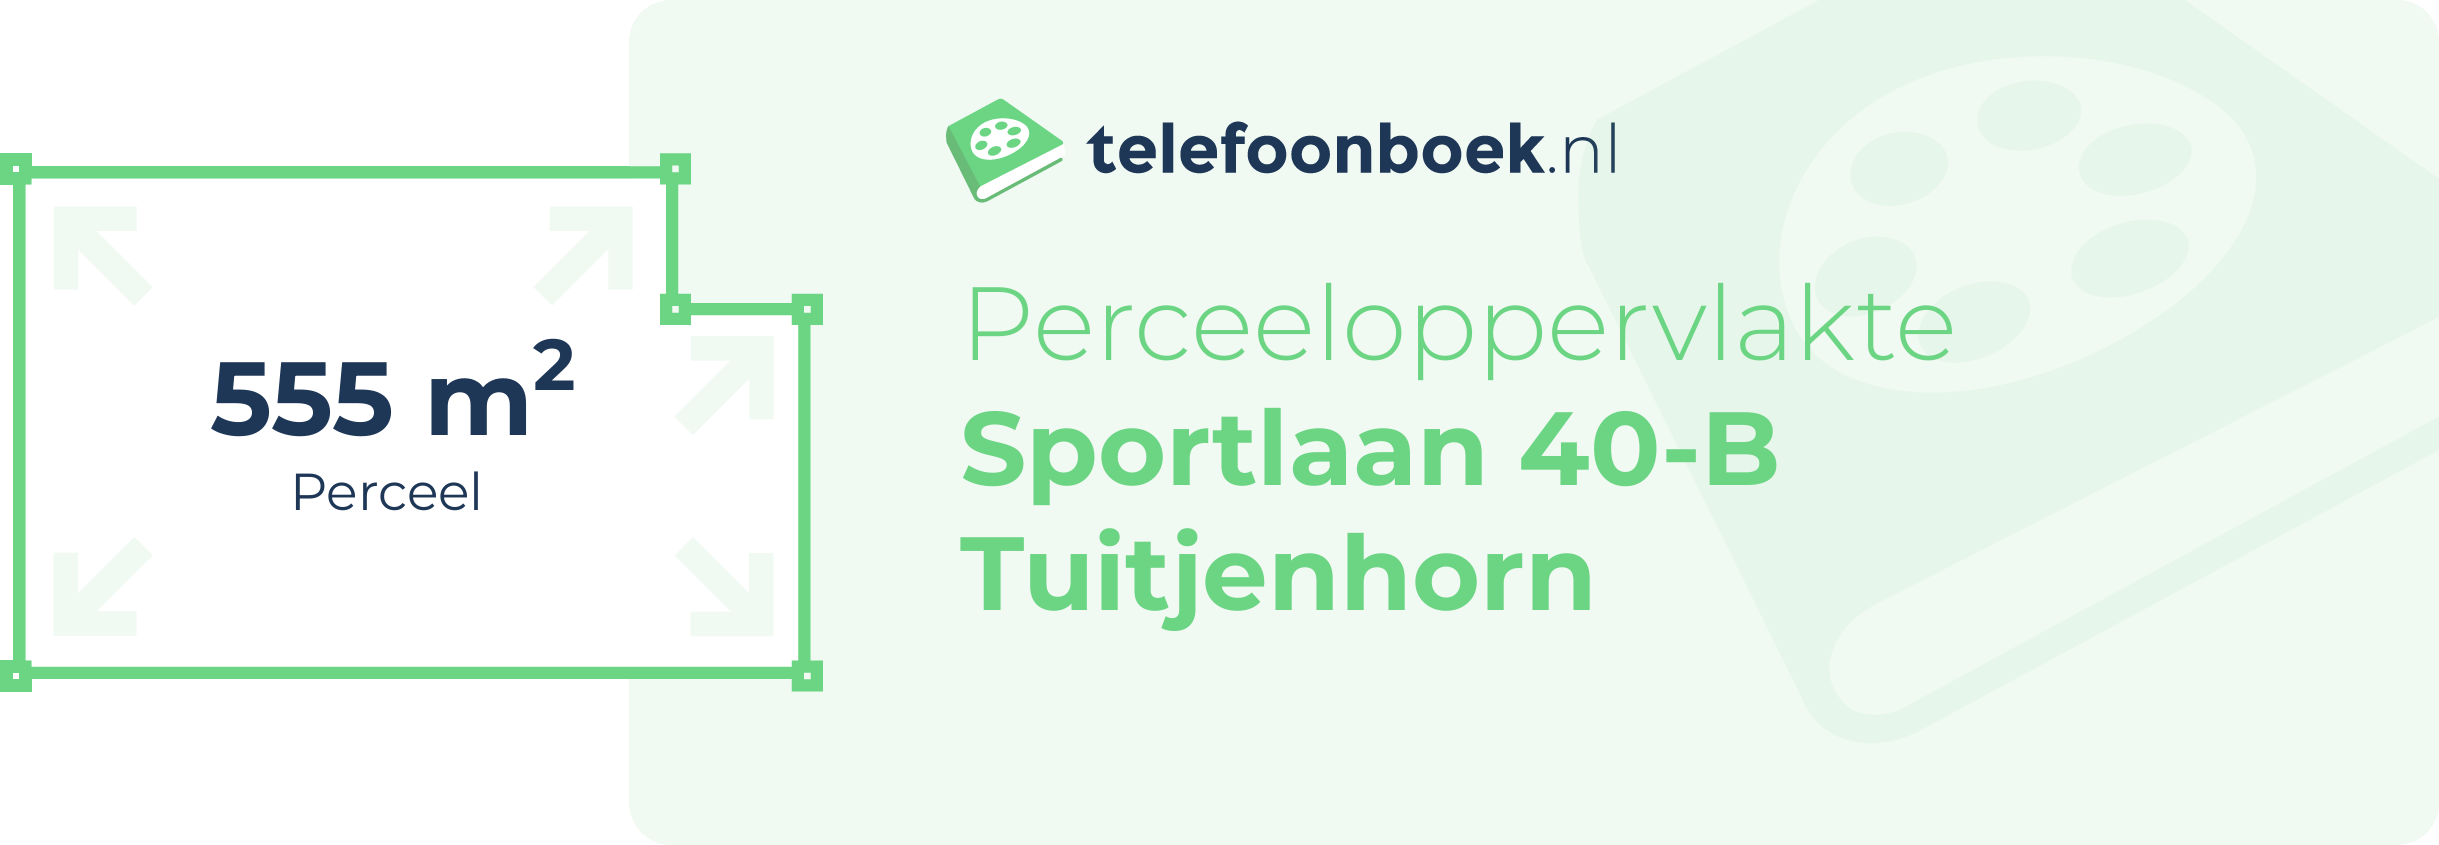 Perceeloppervlakte Sportlaan 40-B Tuitjenhorn